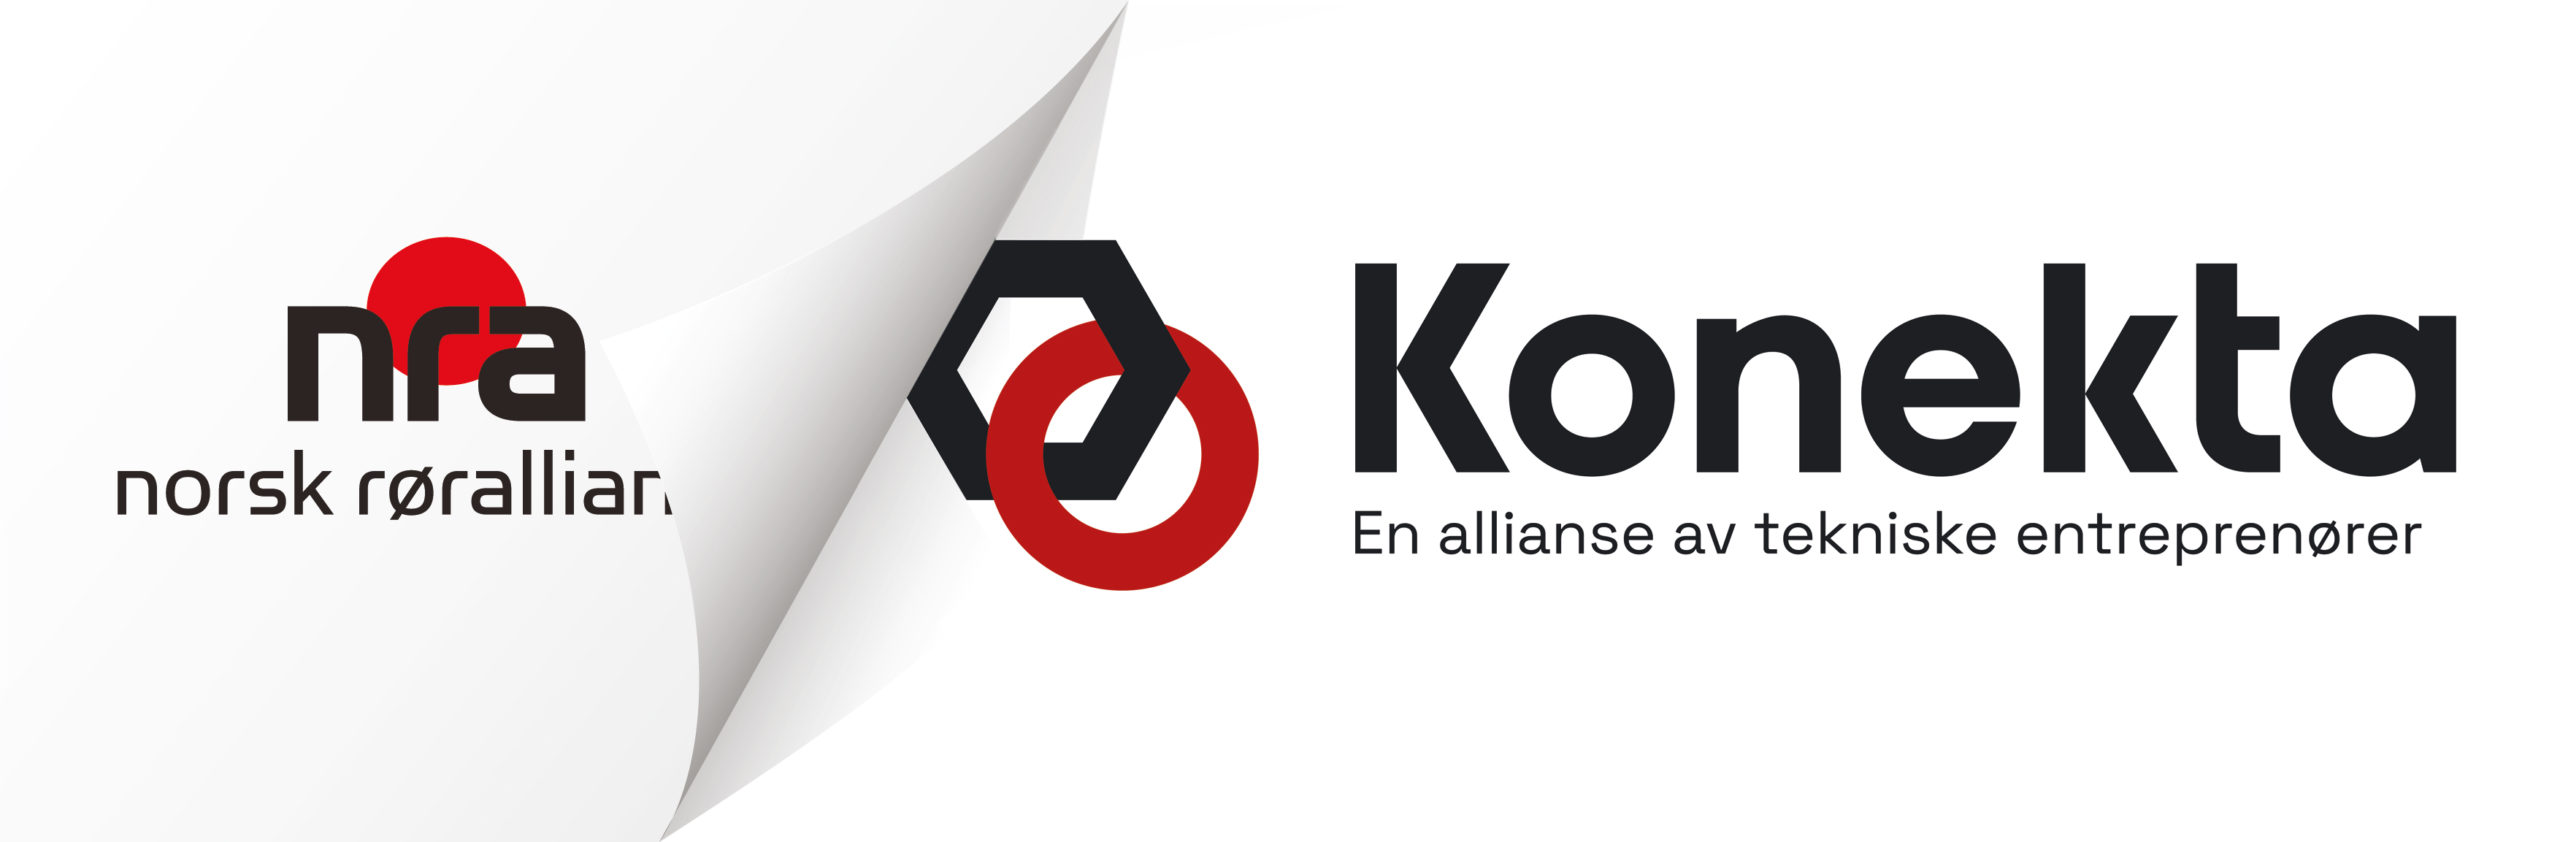 bilde av gammel nra logo og ny KONEKTA logo